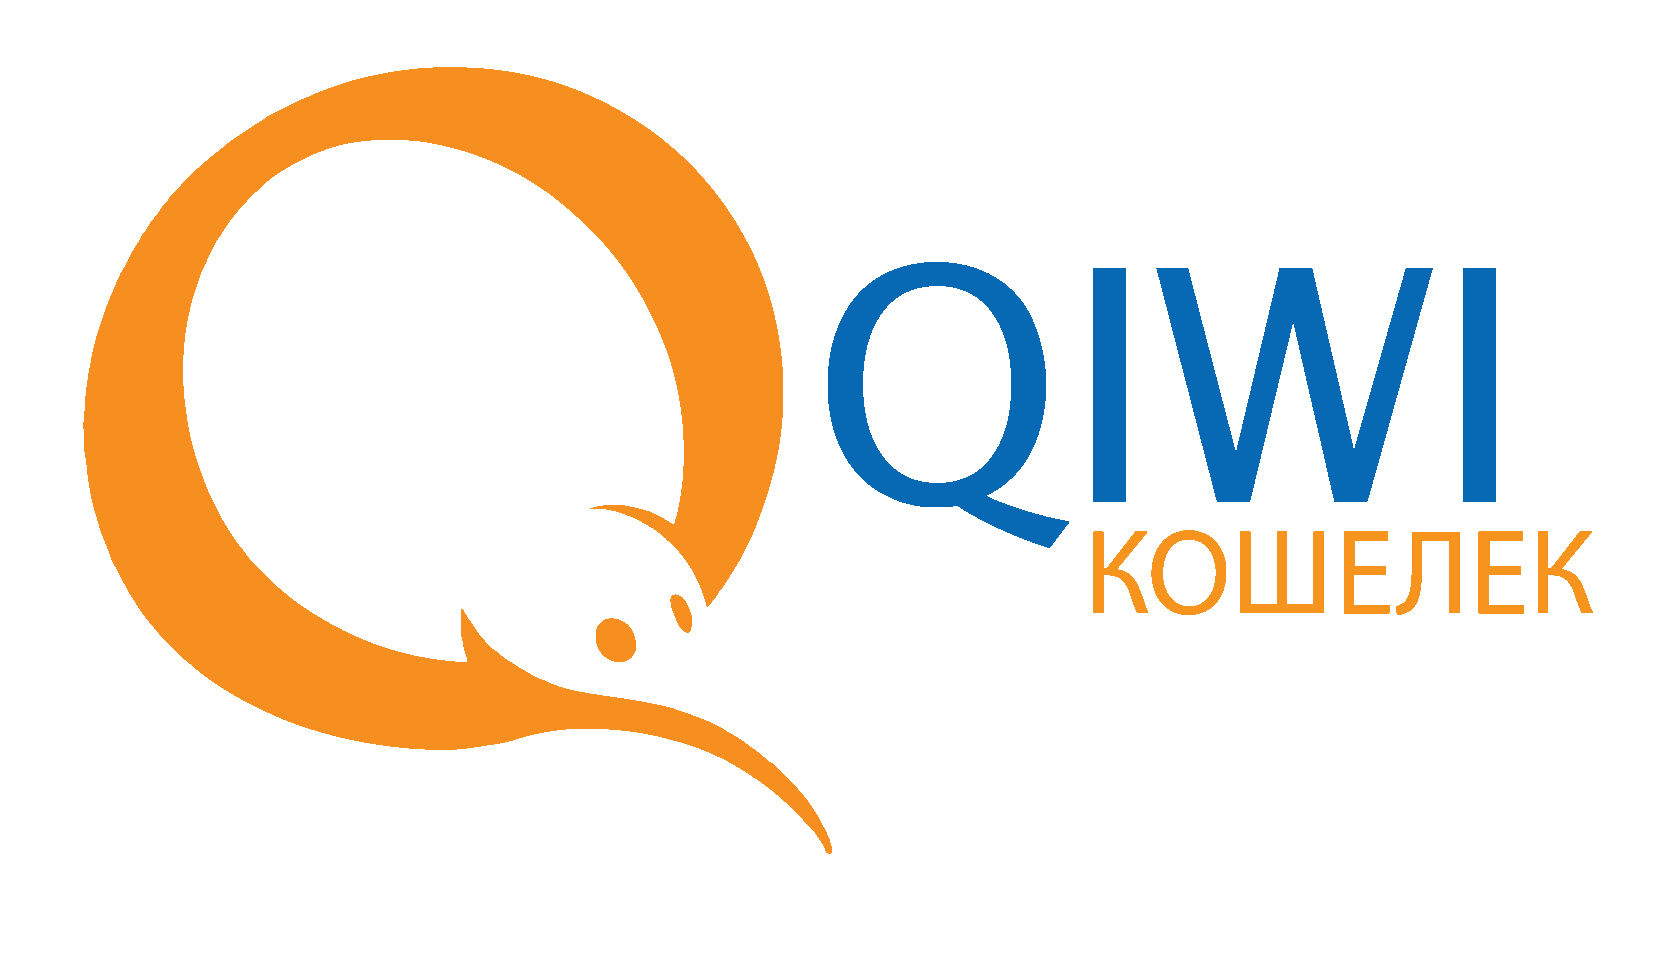 Download qiwi. Киви кошелек. Платежная система QIWI. QIWI логотип. Ава киви кошелек.